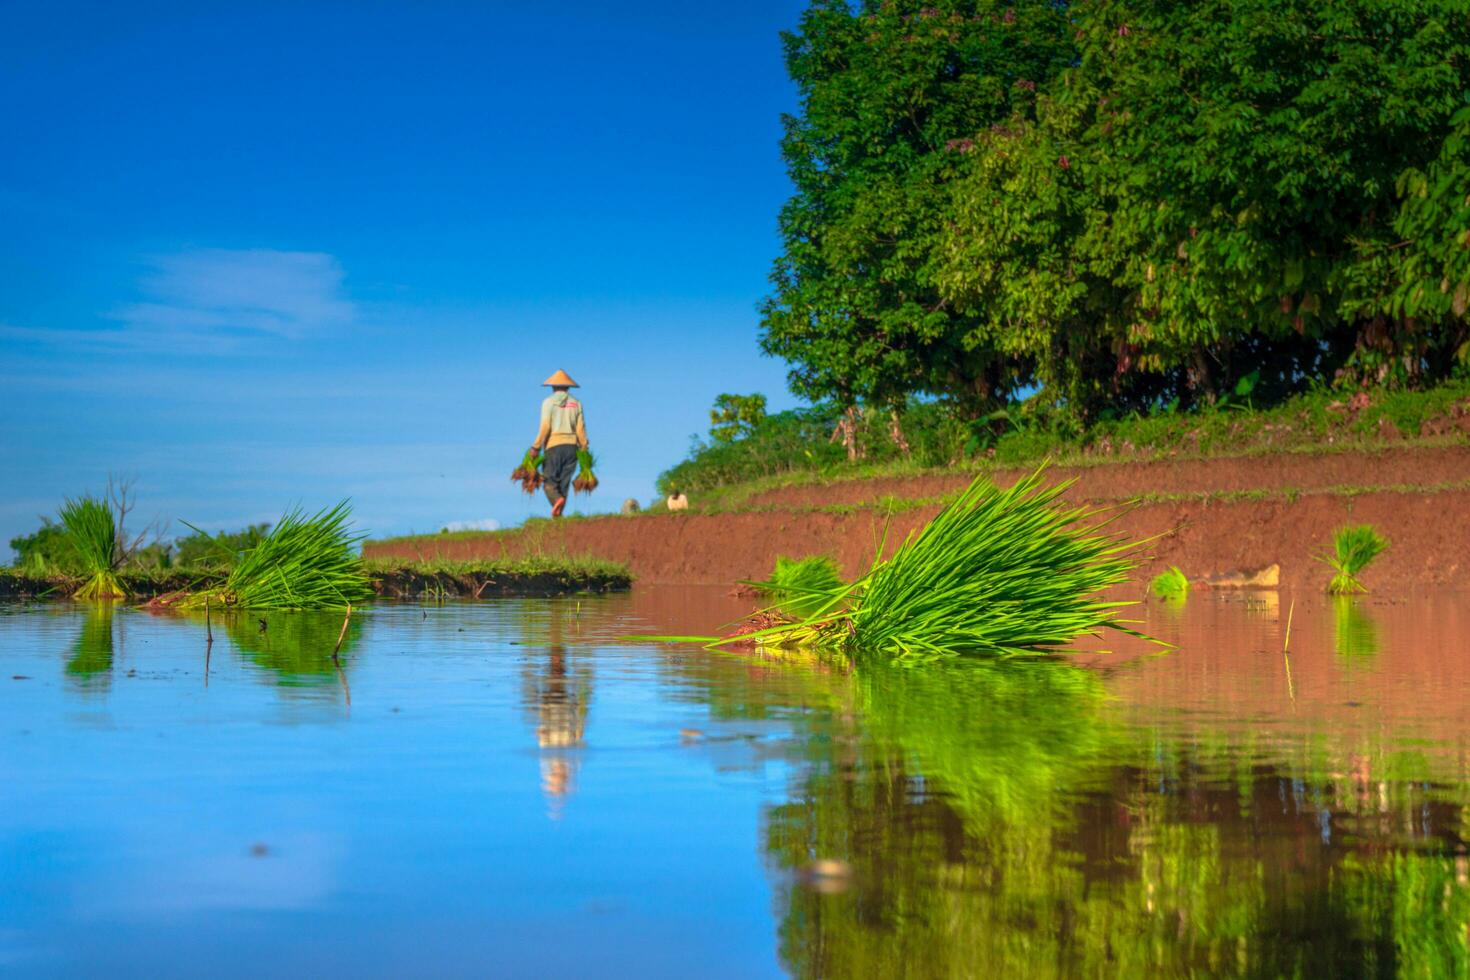 bela vista matinal indonésia panorama paisagem arrozais com cor de beleza e luz natural do céu foto